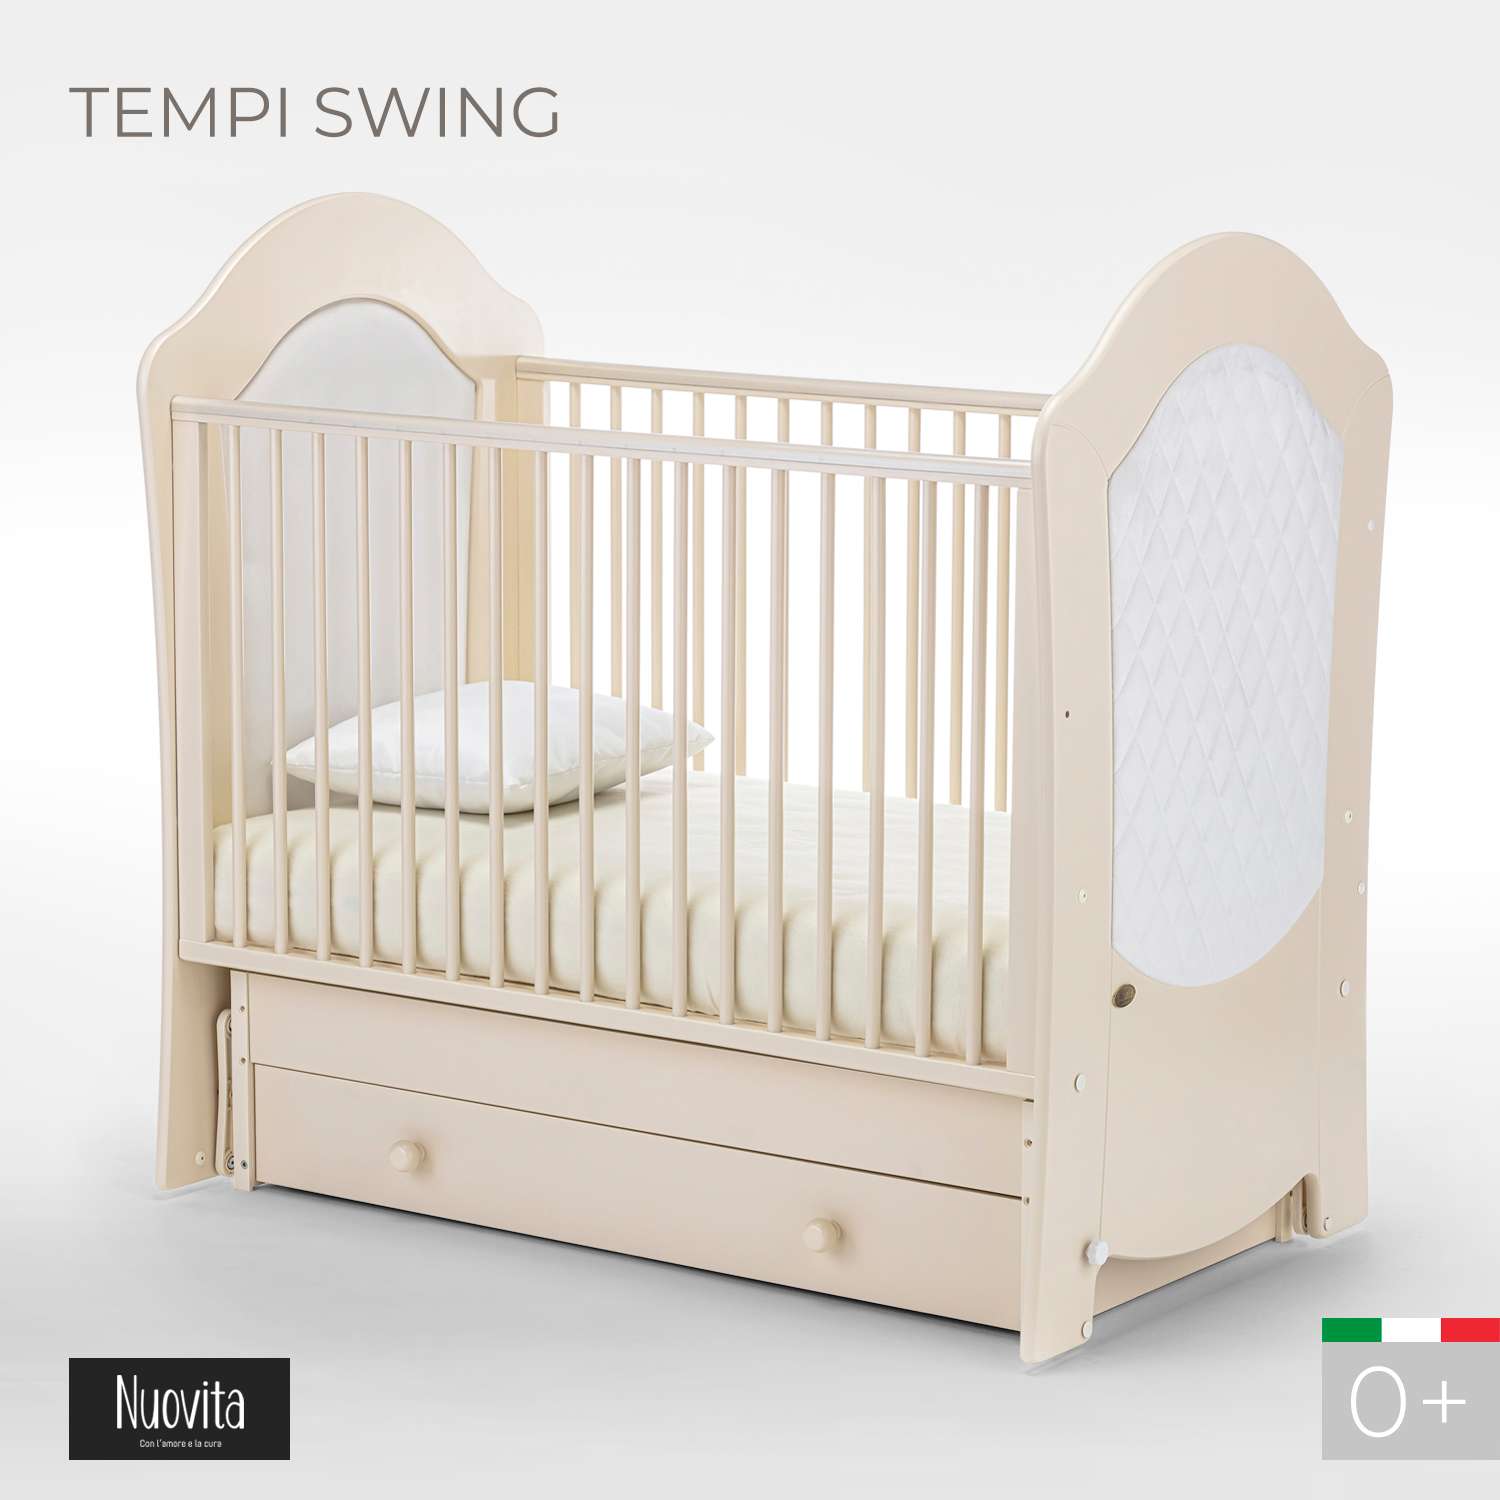 Детская кроватка Nuovita Tempi Swing прямоугольная, поперечный маятник (слоновая кость) - фото 2